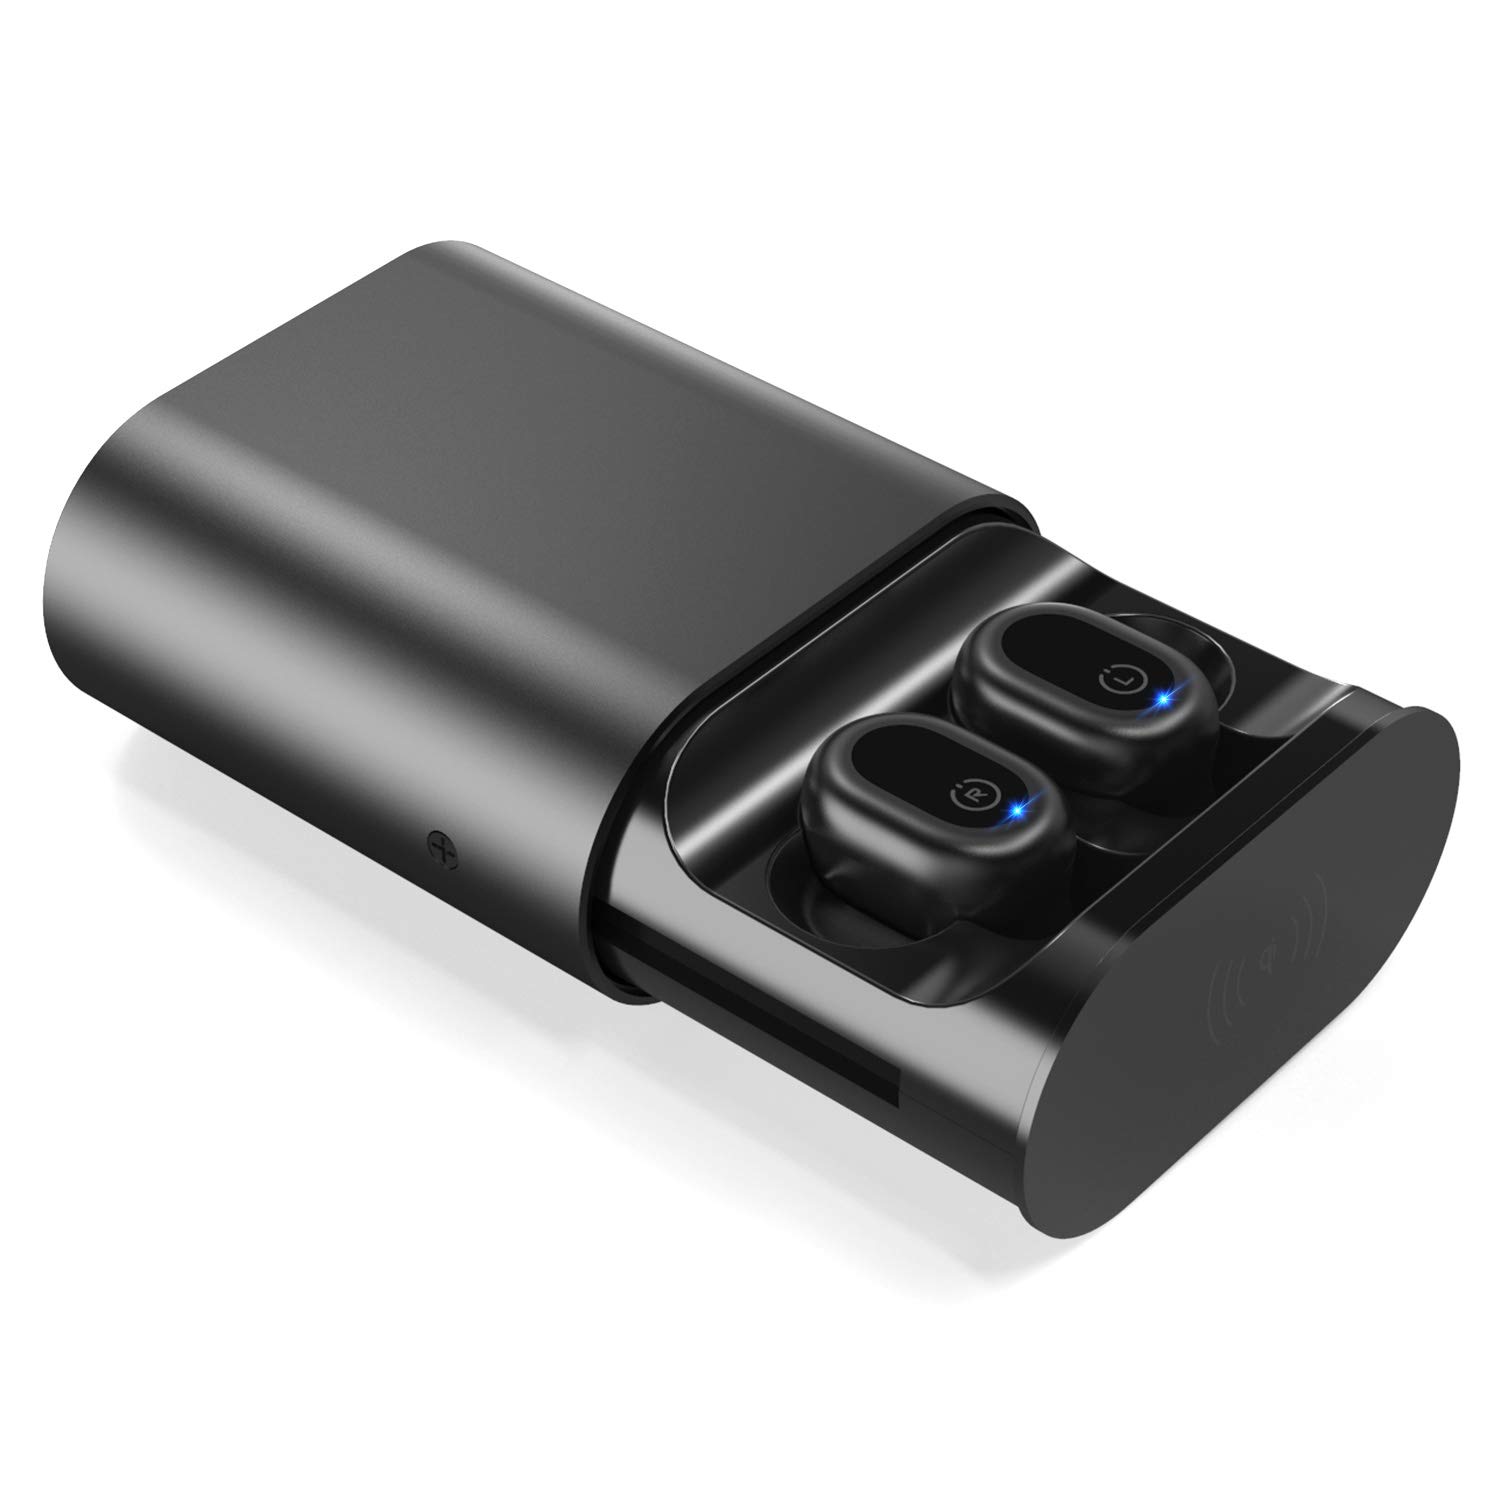 In-ear wireless IPX 7 waterproof bluetooth earphones support wireless charging